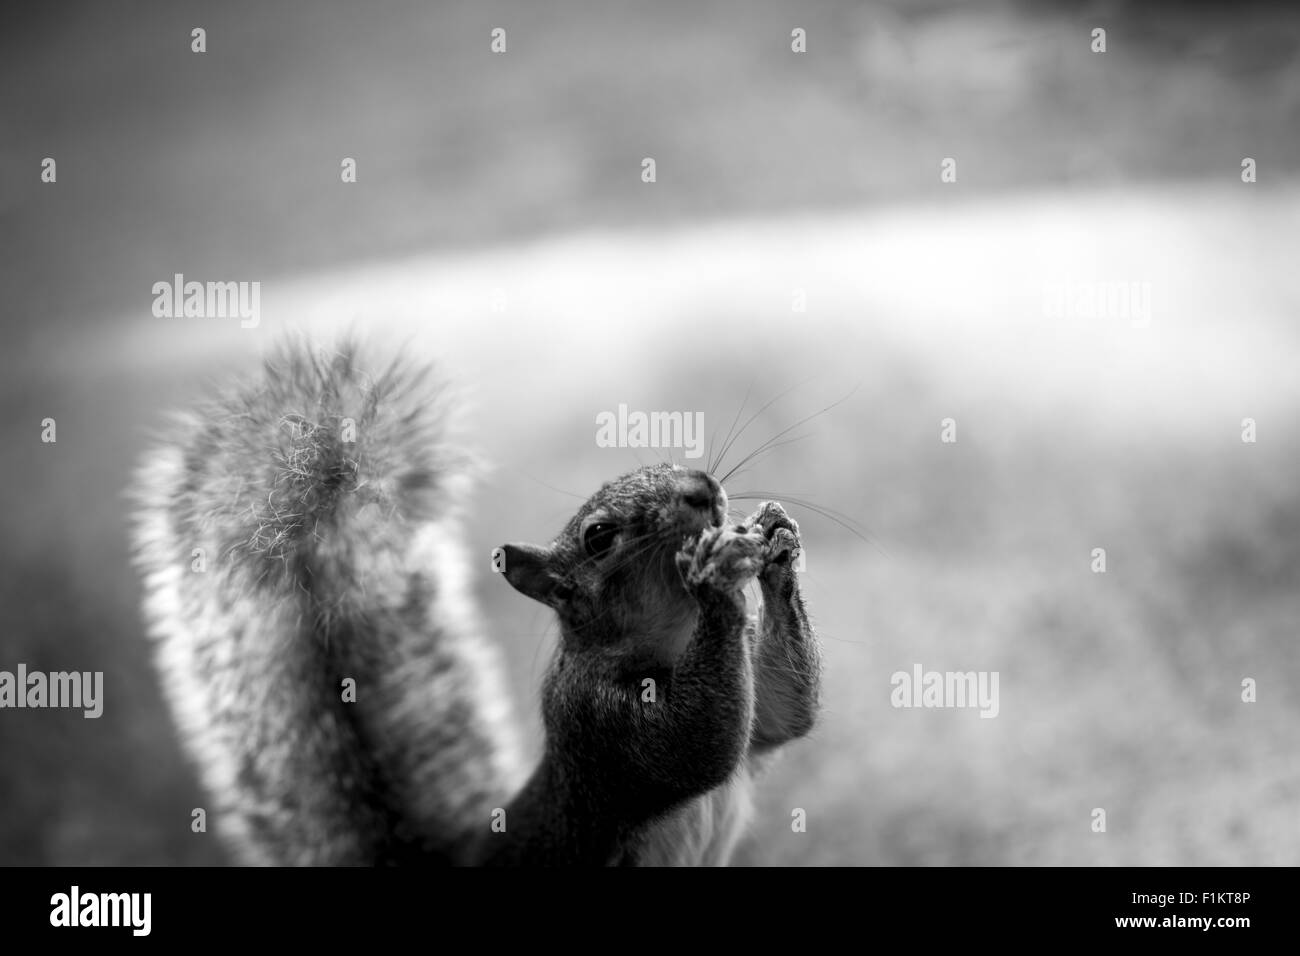 Bild von einem Eichhörnchen Essen eine Nuss Stockfoto